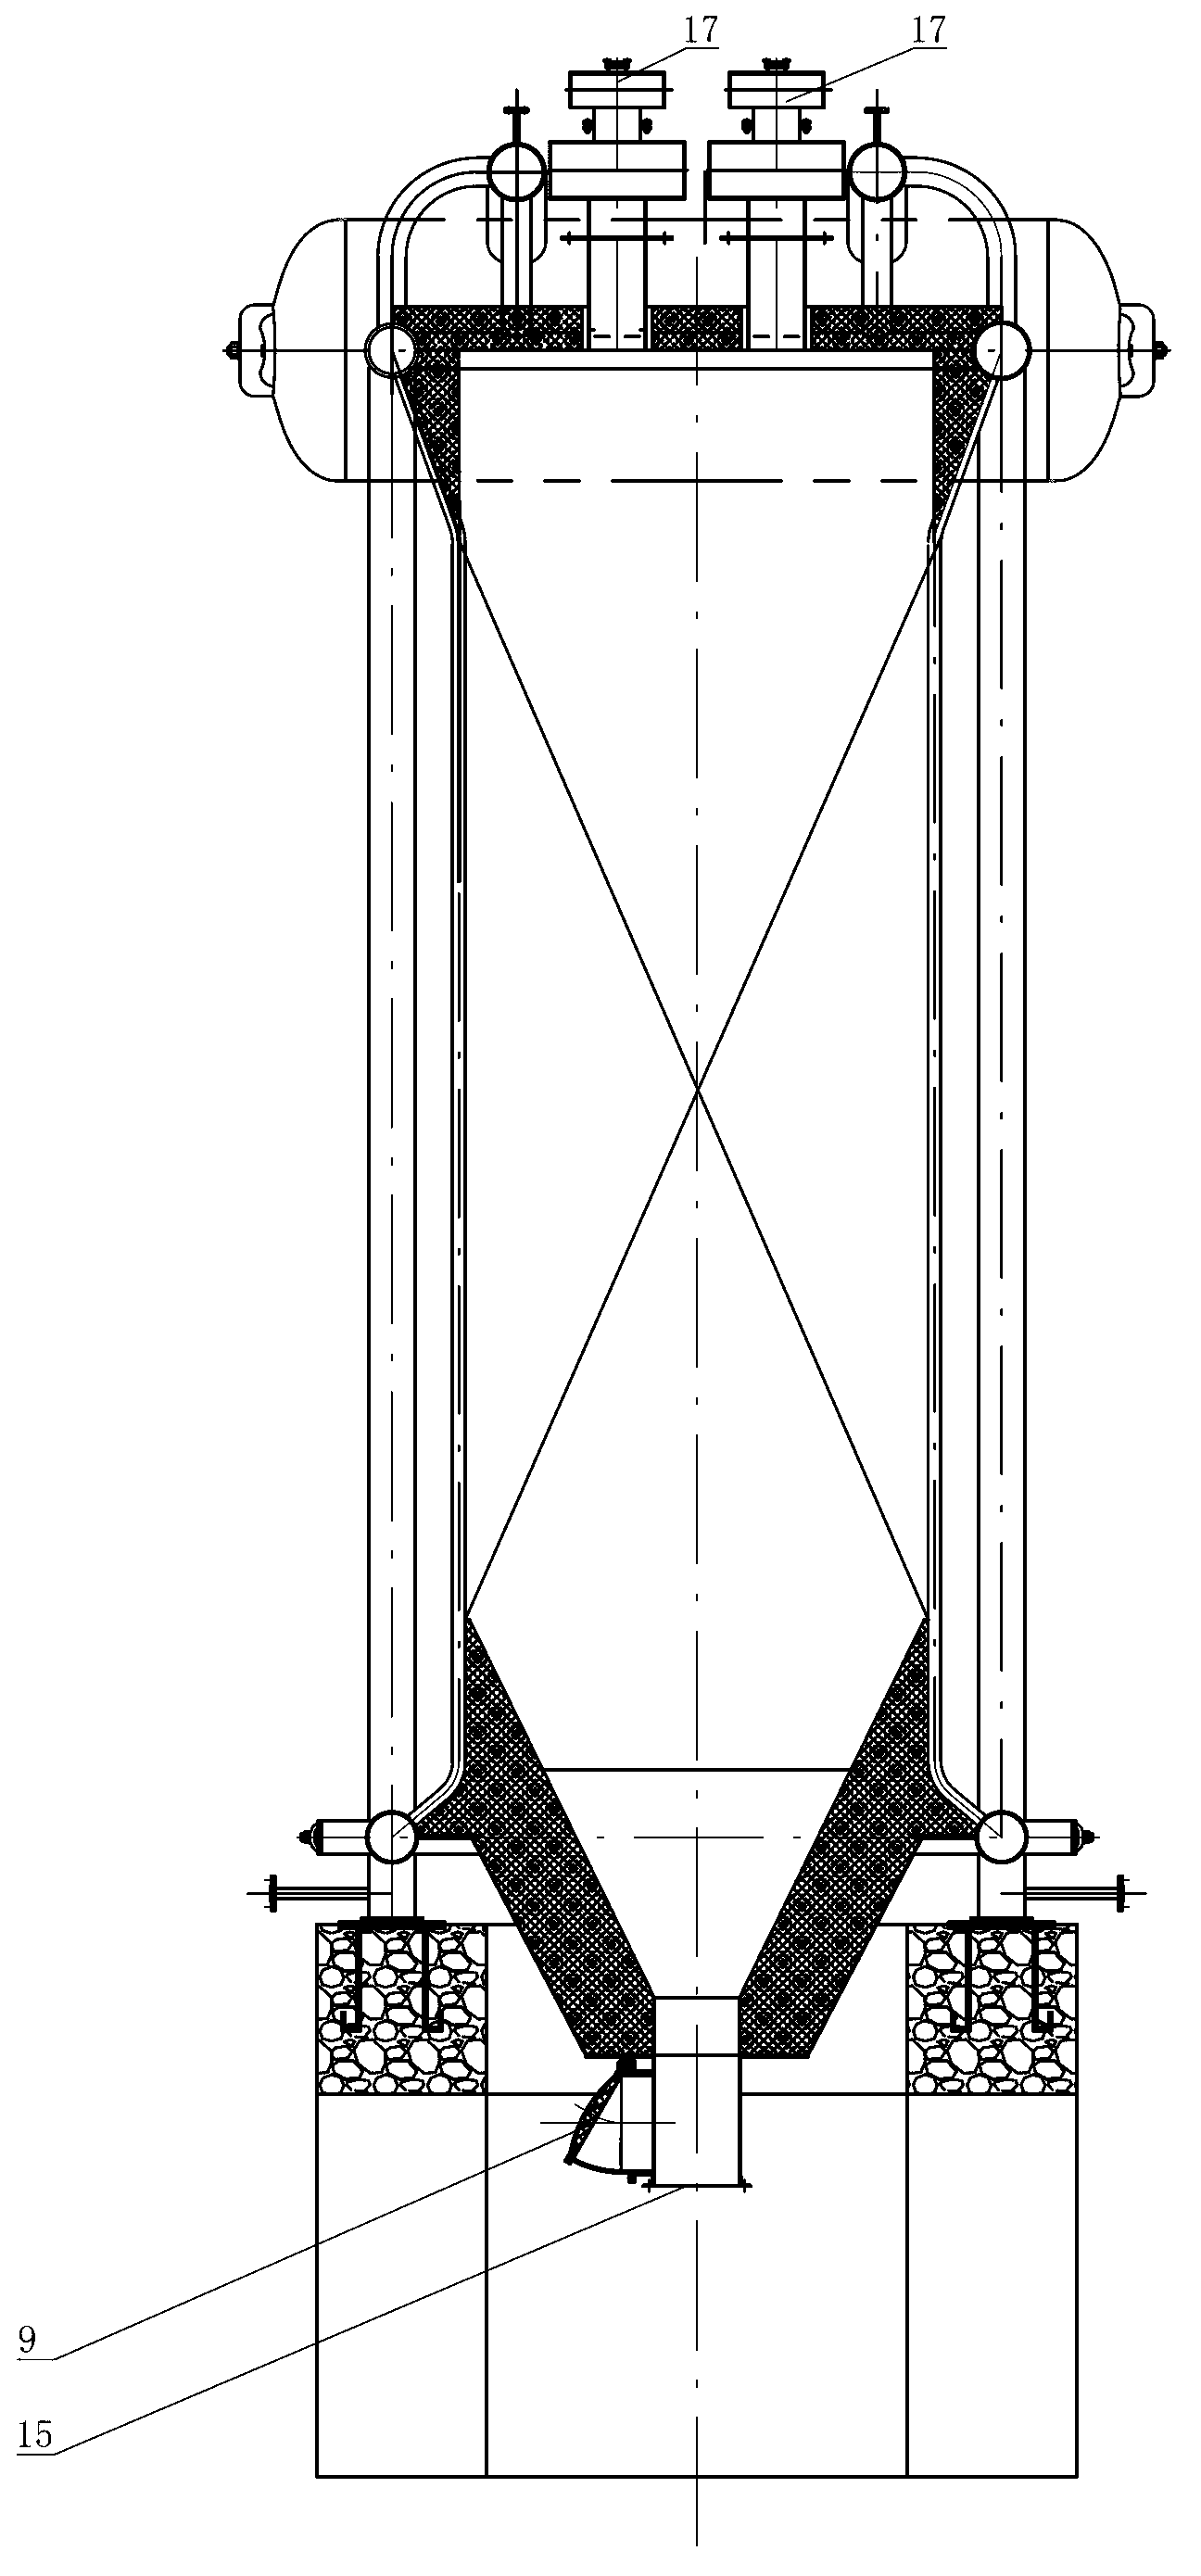 Vertical type coal dust corner tube boiler